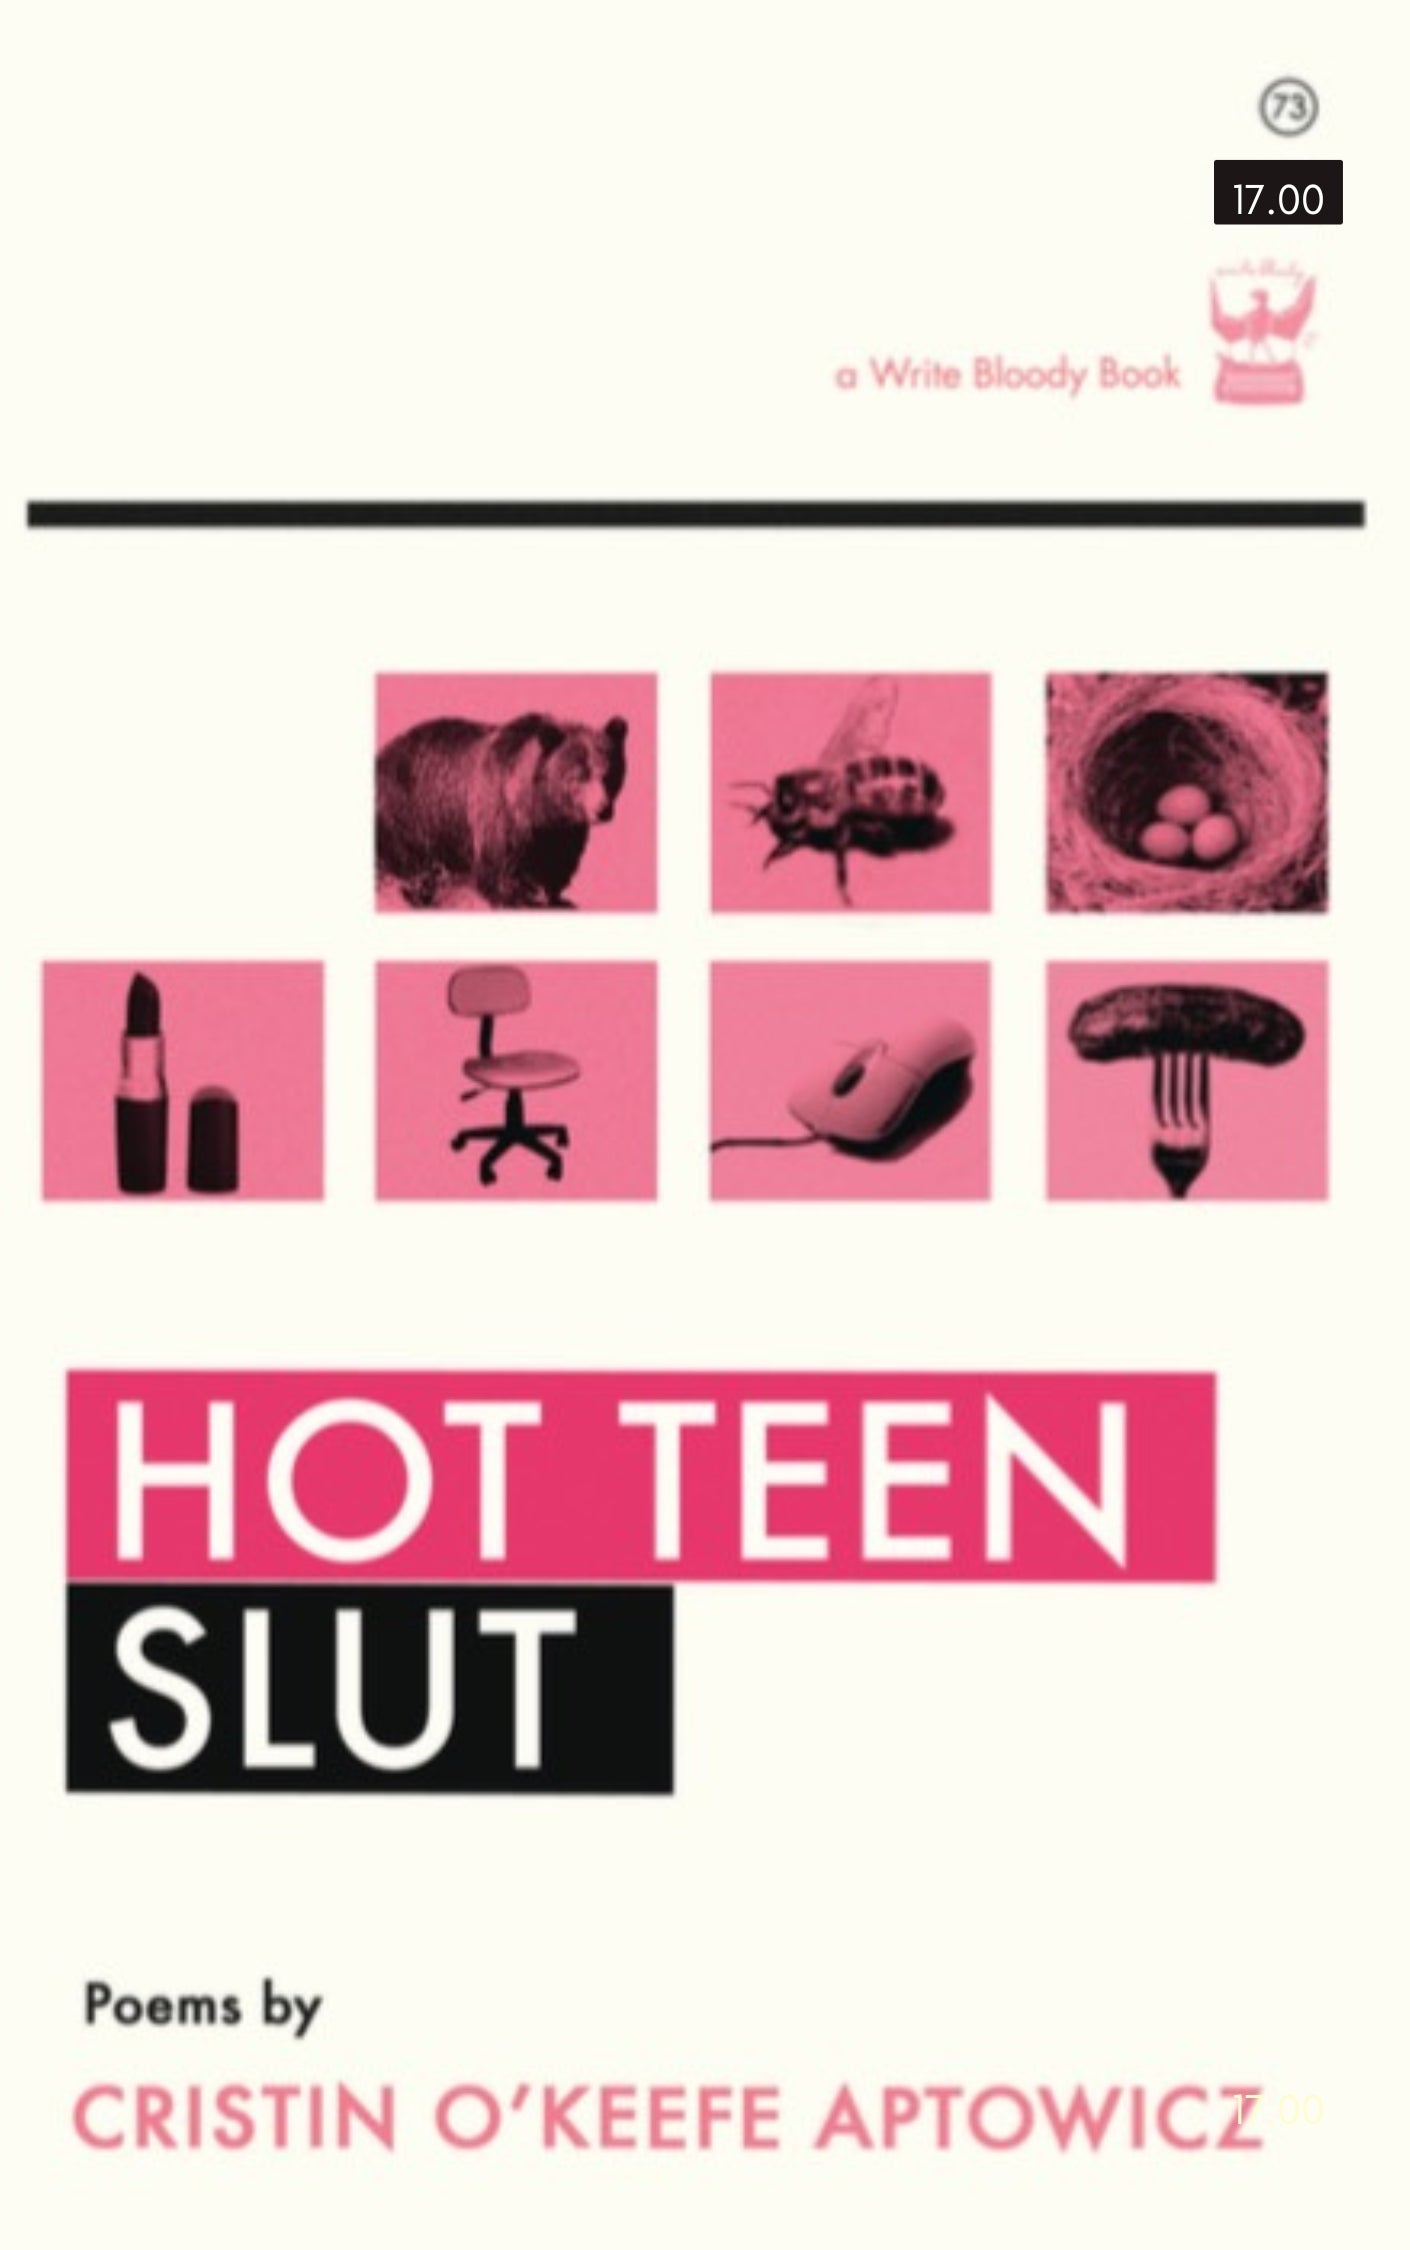 Hot Teen Slut by Cristin O’Keefe Aptowicz